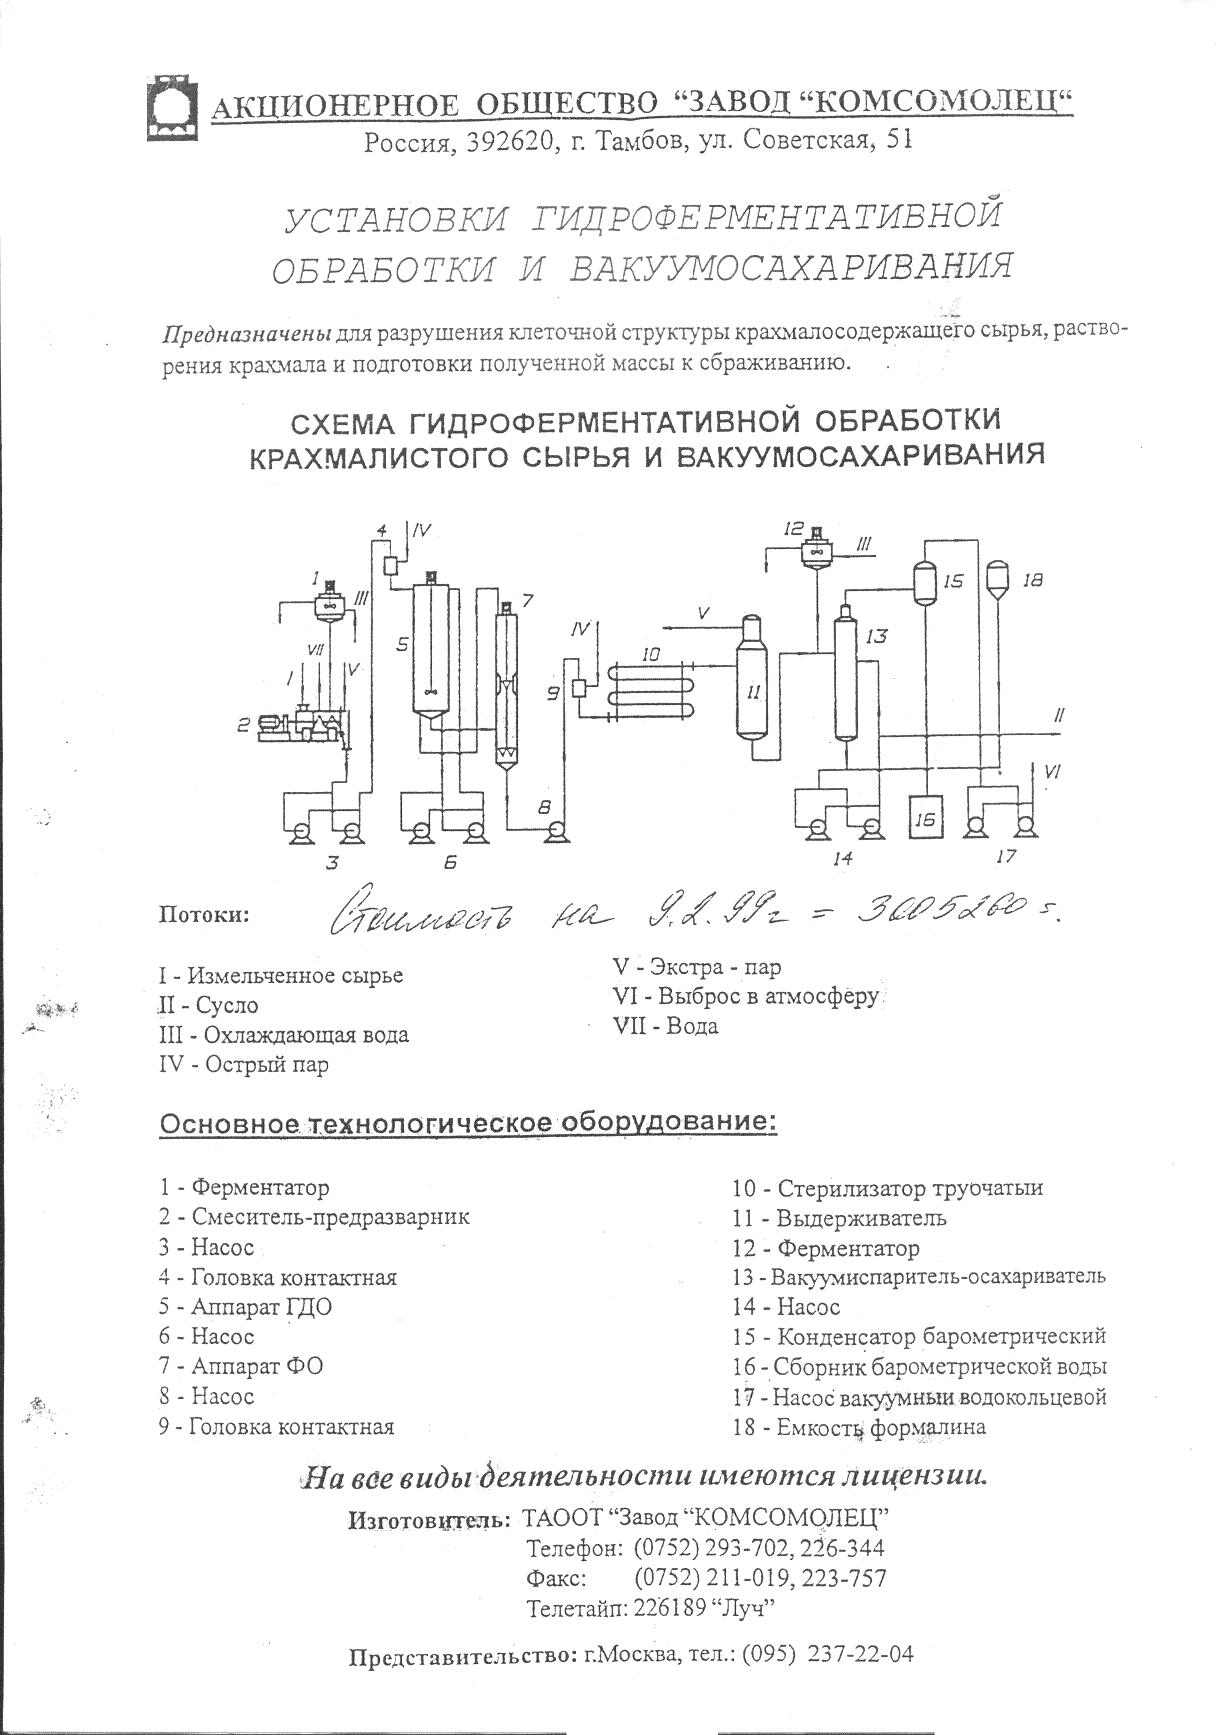 Схема гидроферментативной обработки и вакуум осахаривания крахмалистого сырья